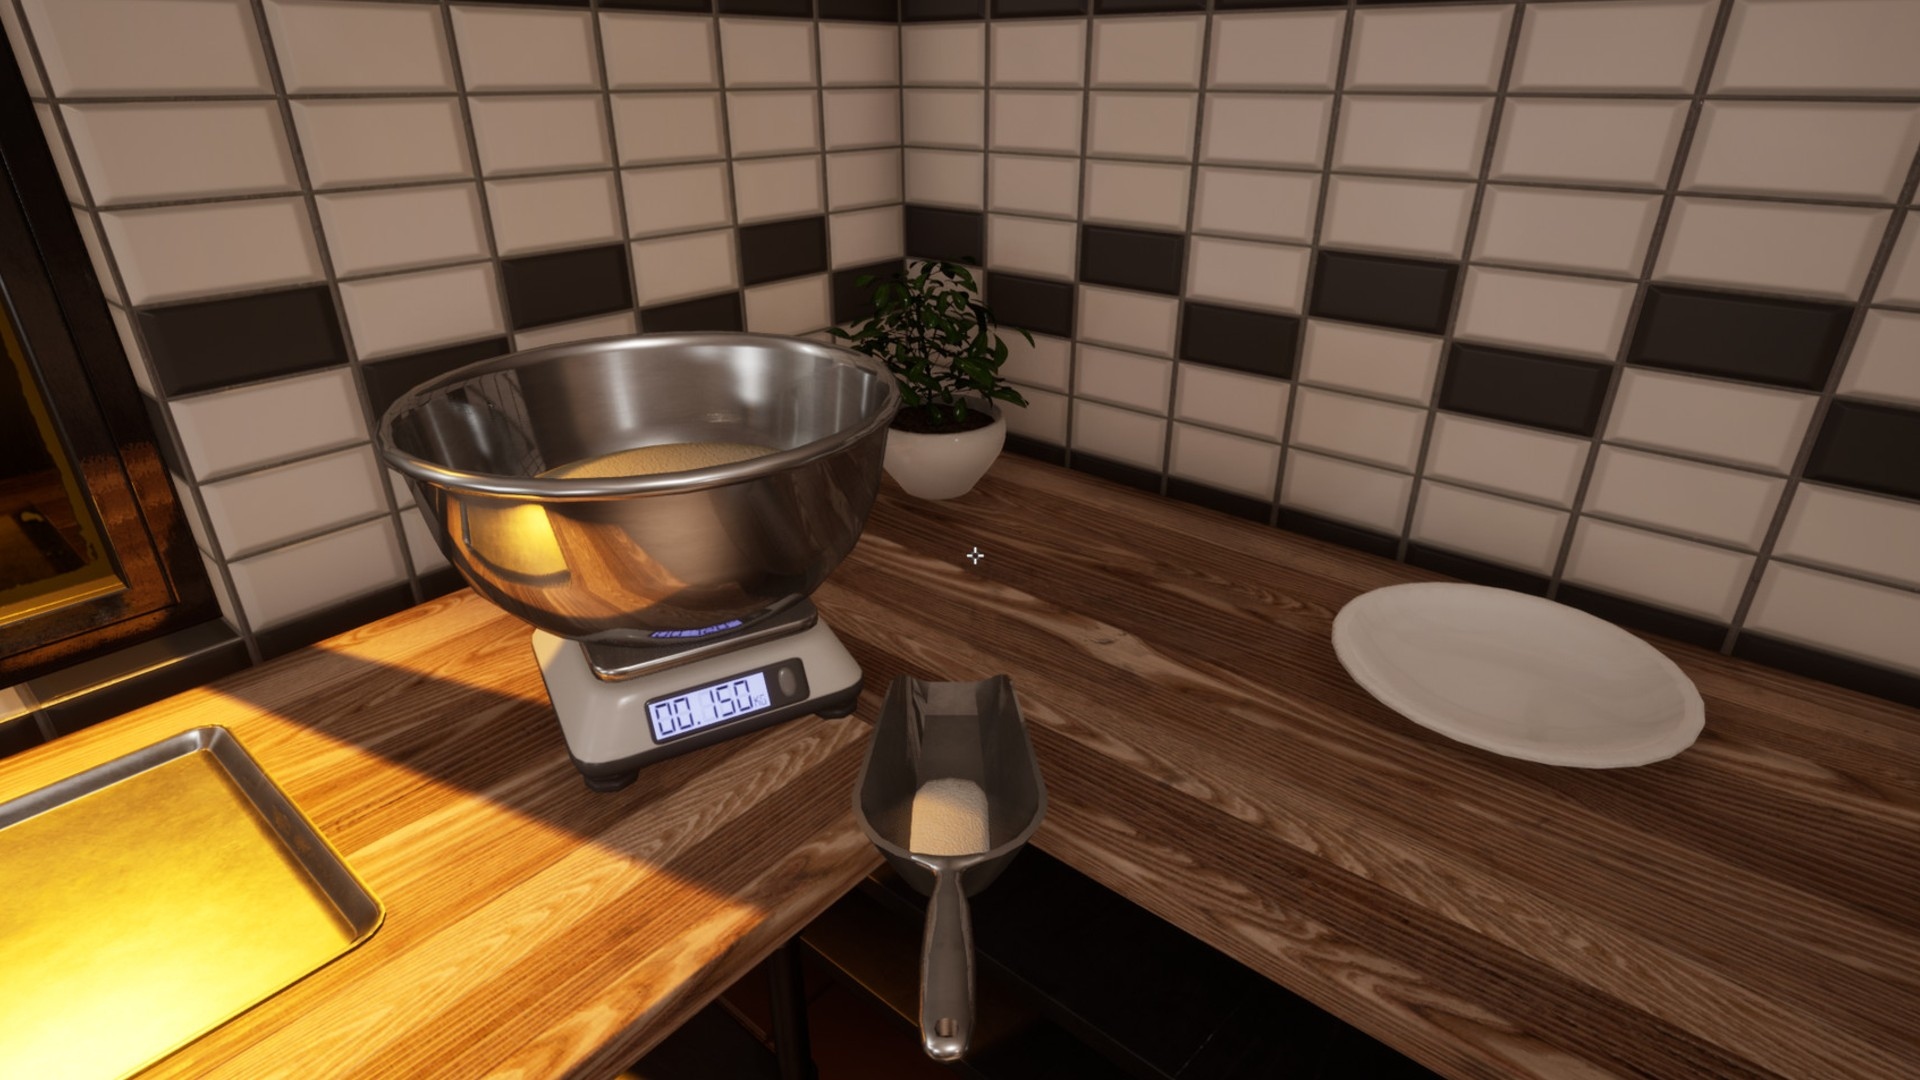 Cooking Simulator Review: Good Eats – GameSkinny